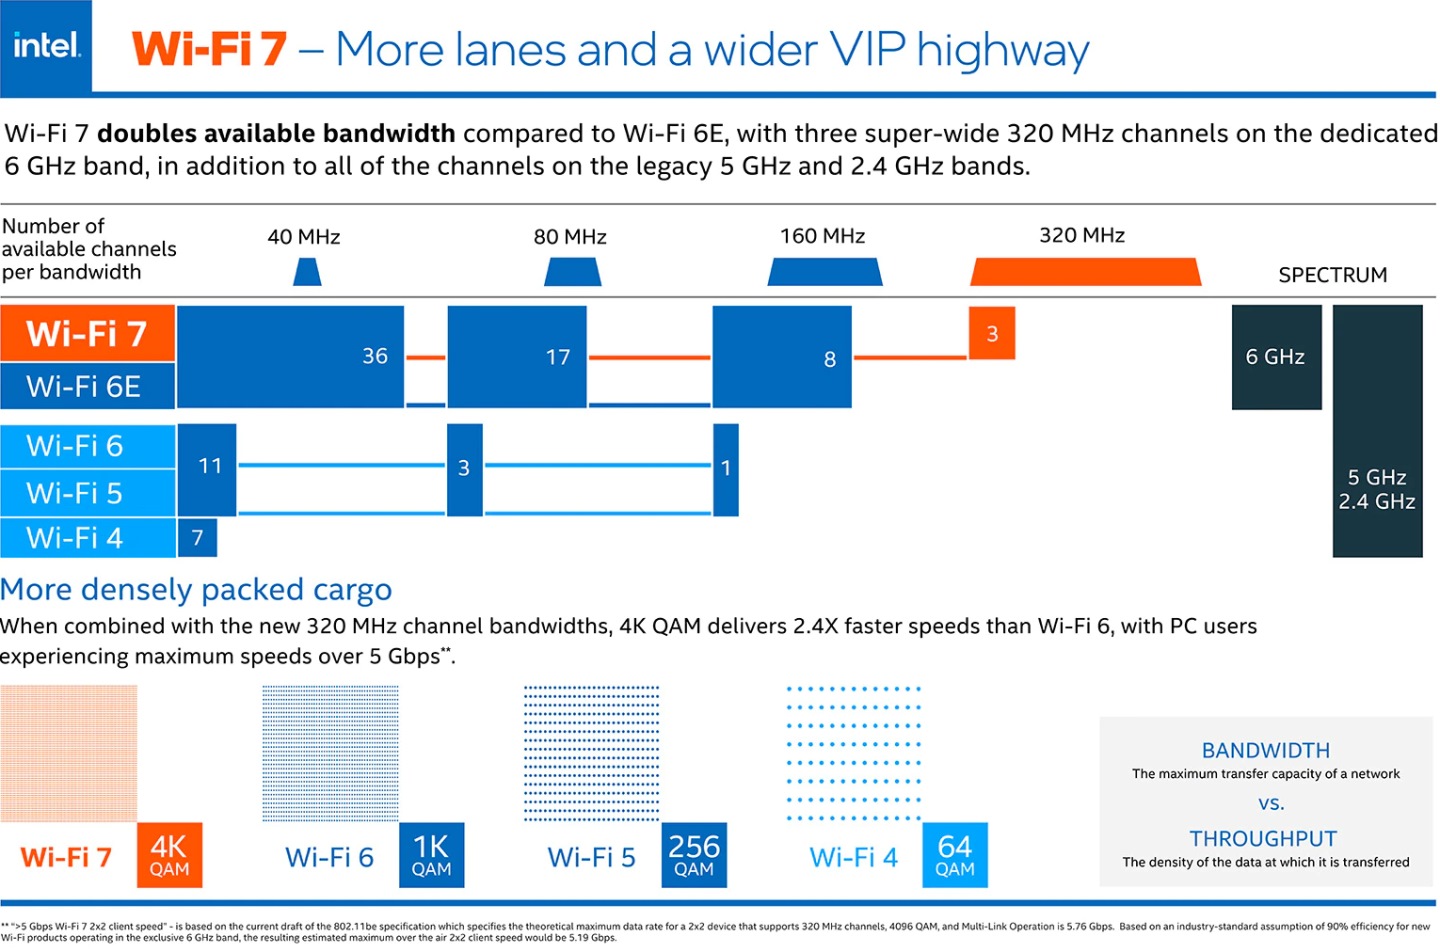 更寬廣的6GHz頻段有如專屬高速公路，有利於提升Wi-Fi 7的通訊效能與穩定度。